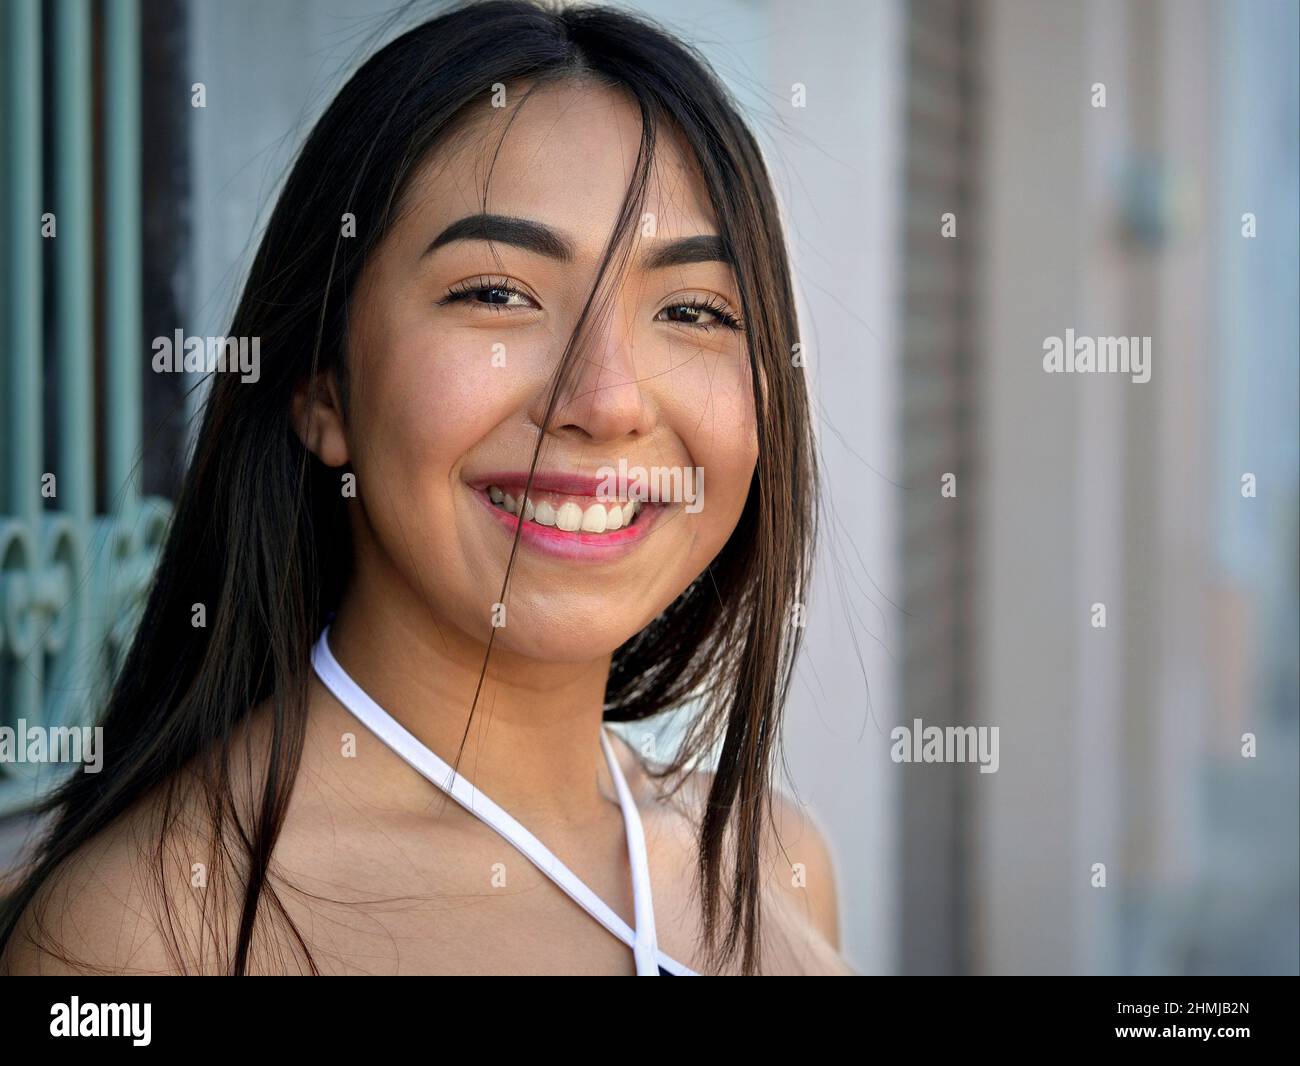 Joyeuse positive belle fille mexicaine à yeux bruns sourit et regarde le spectateur en face d'une maison de la vieille ville avec un grill de fenêtre en fer forgé. Banque D'Images